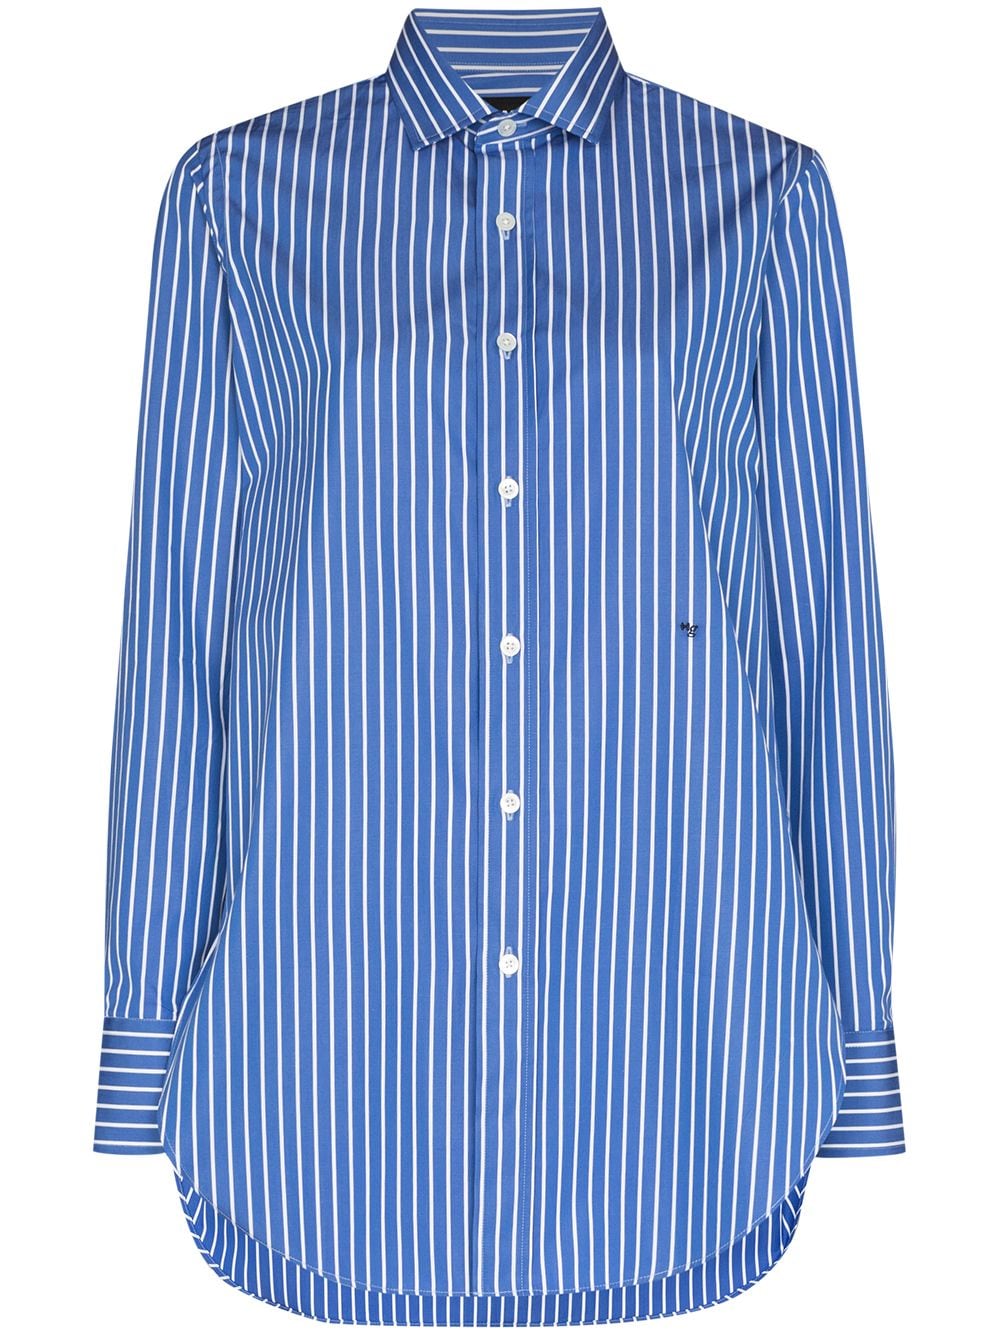 Louis vuitton - T-Shirt - SIZE S - Stripes - Authentic